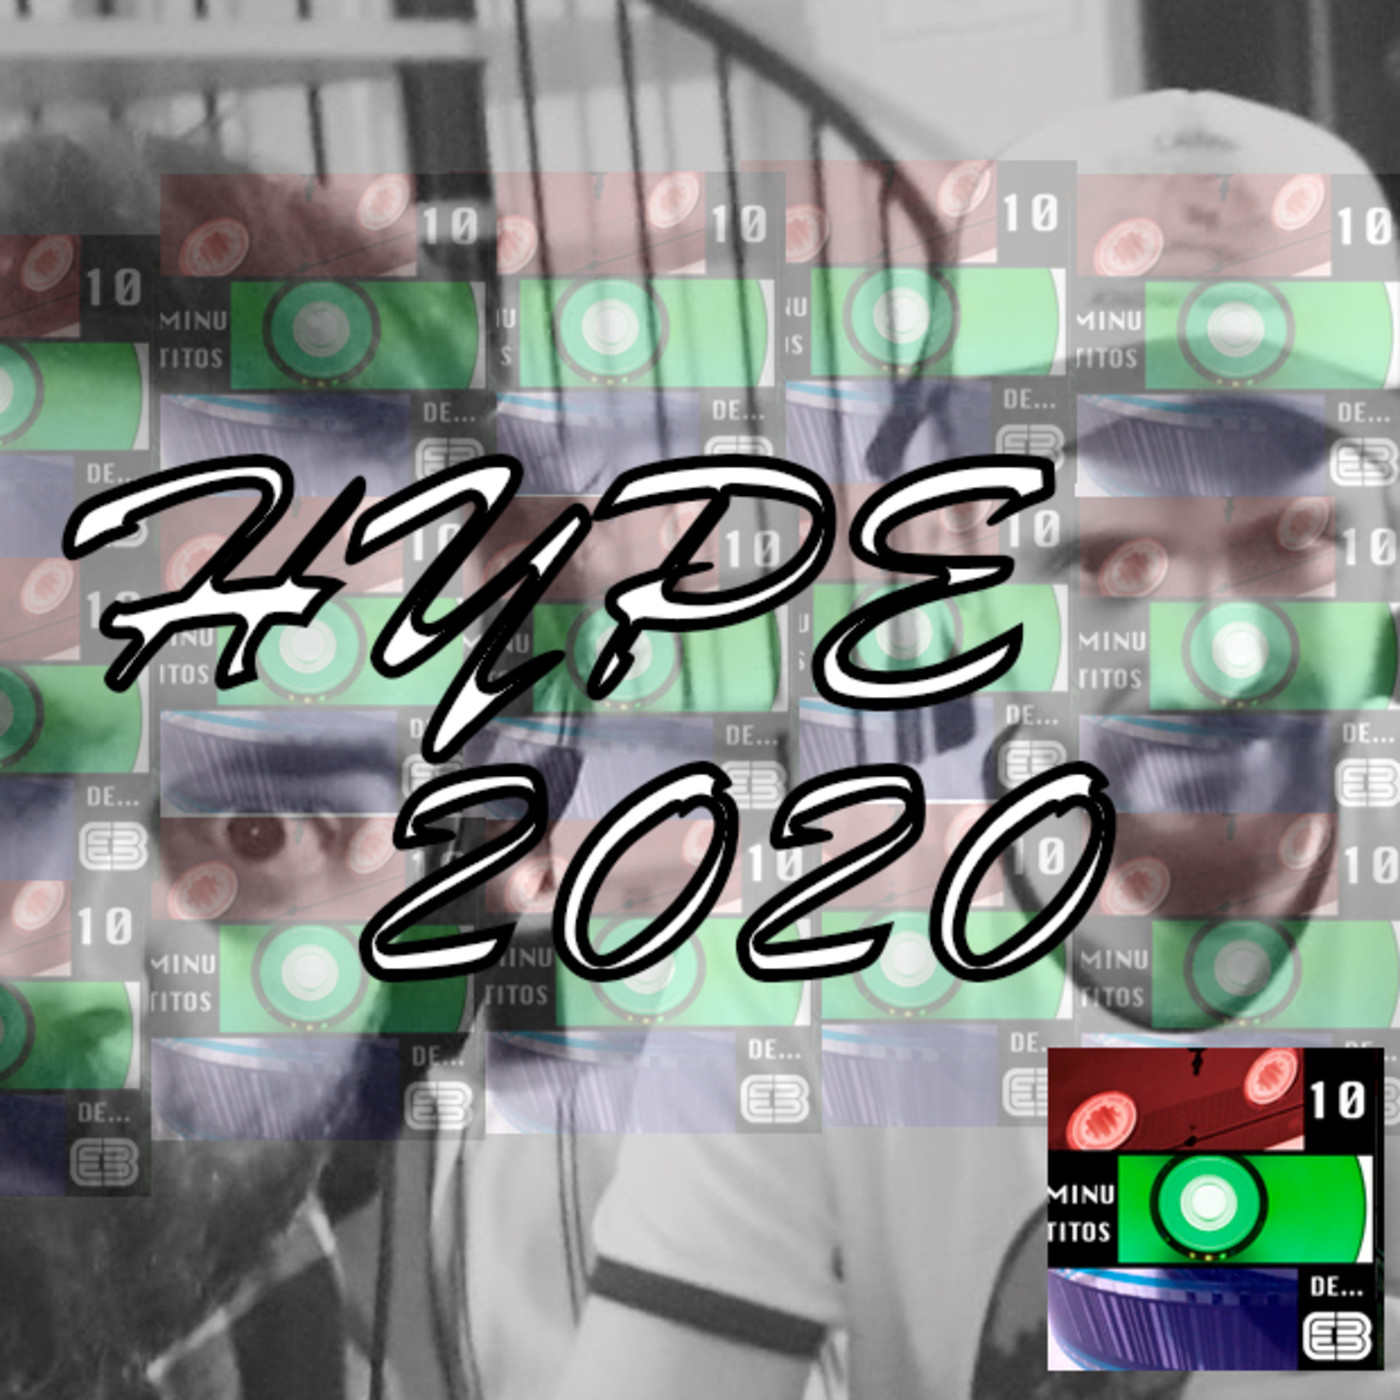 7x01 10 Minutitos de Hype 2020